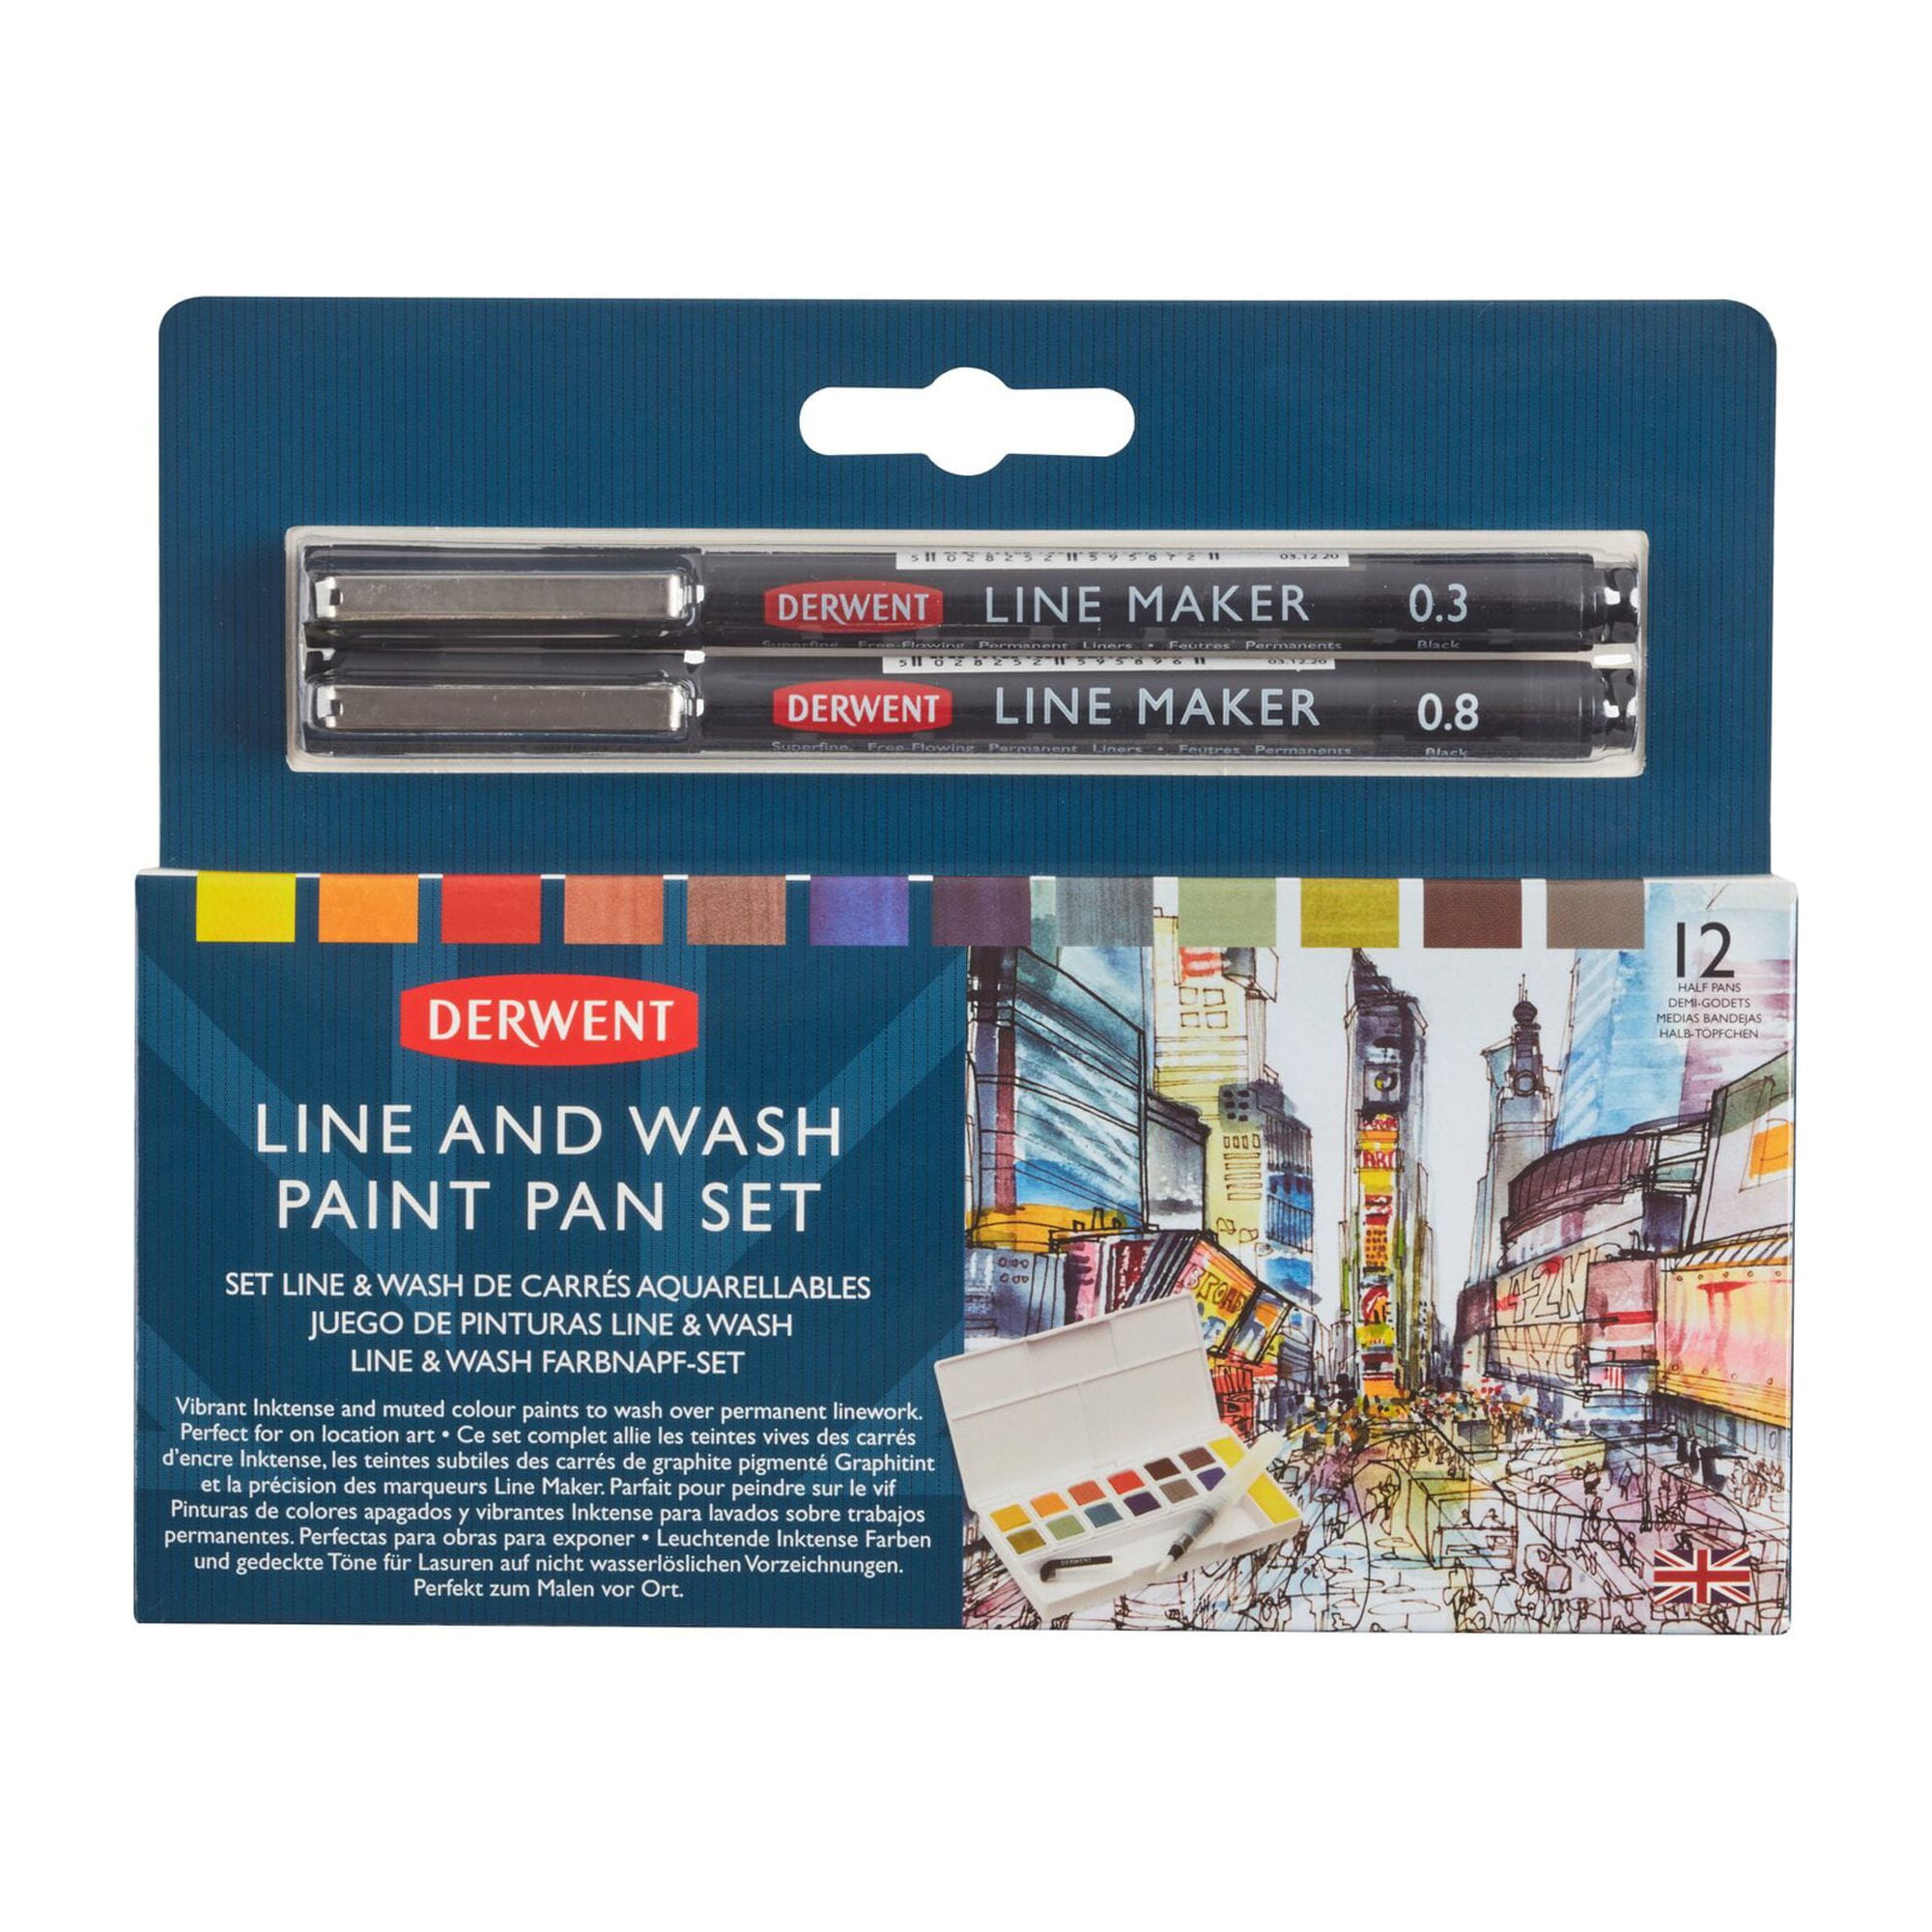 Derwent Inktense: Derwent Inktense Paint Pan Travel Set - The Oil Paint  Store